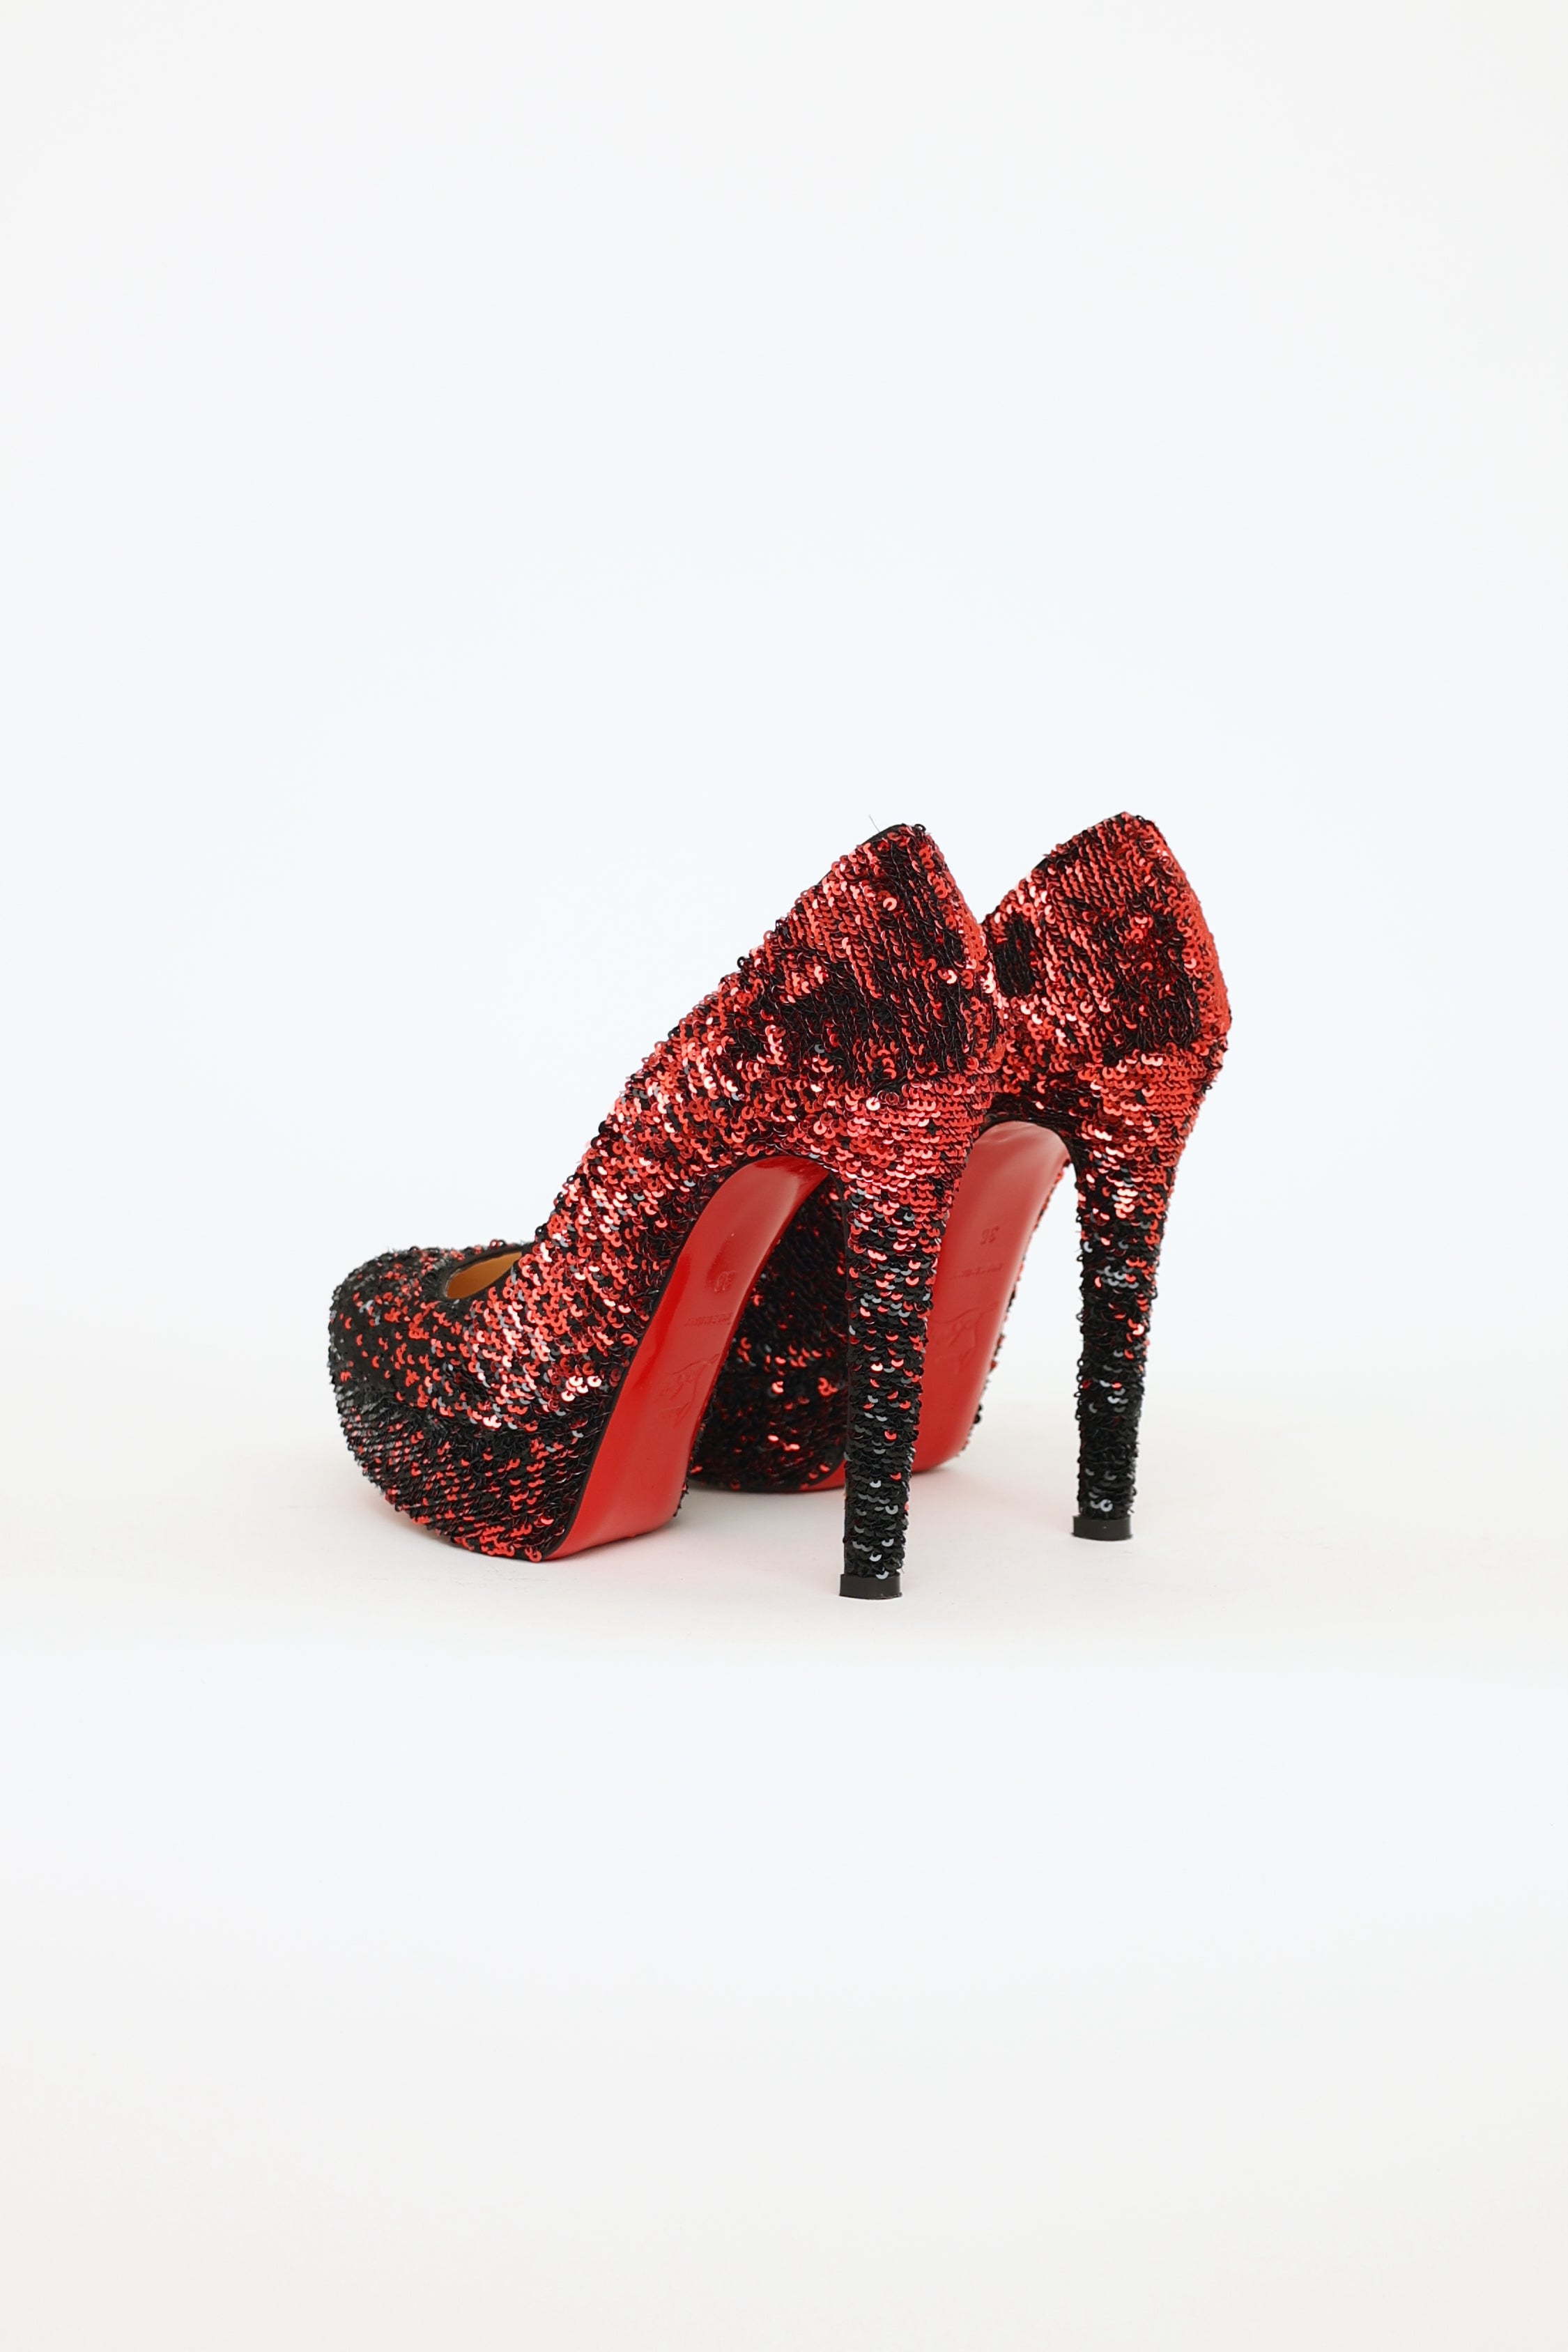 Dark Red Glitter Shoes Stiletto Heels Platform Pumps US Size 3-15|FSJshoes